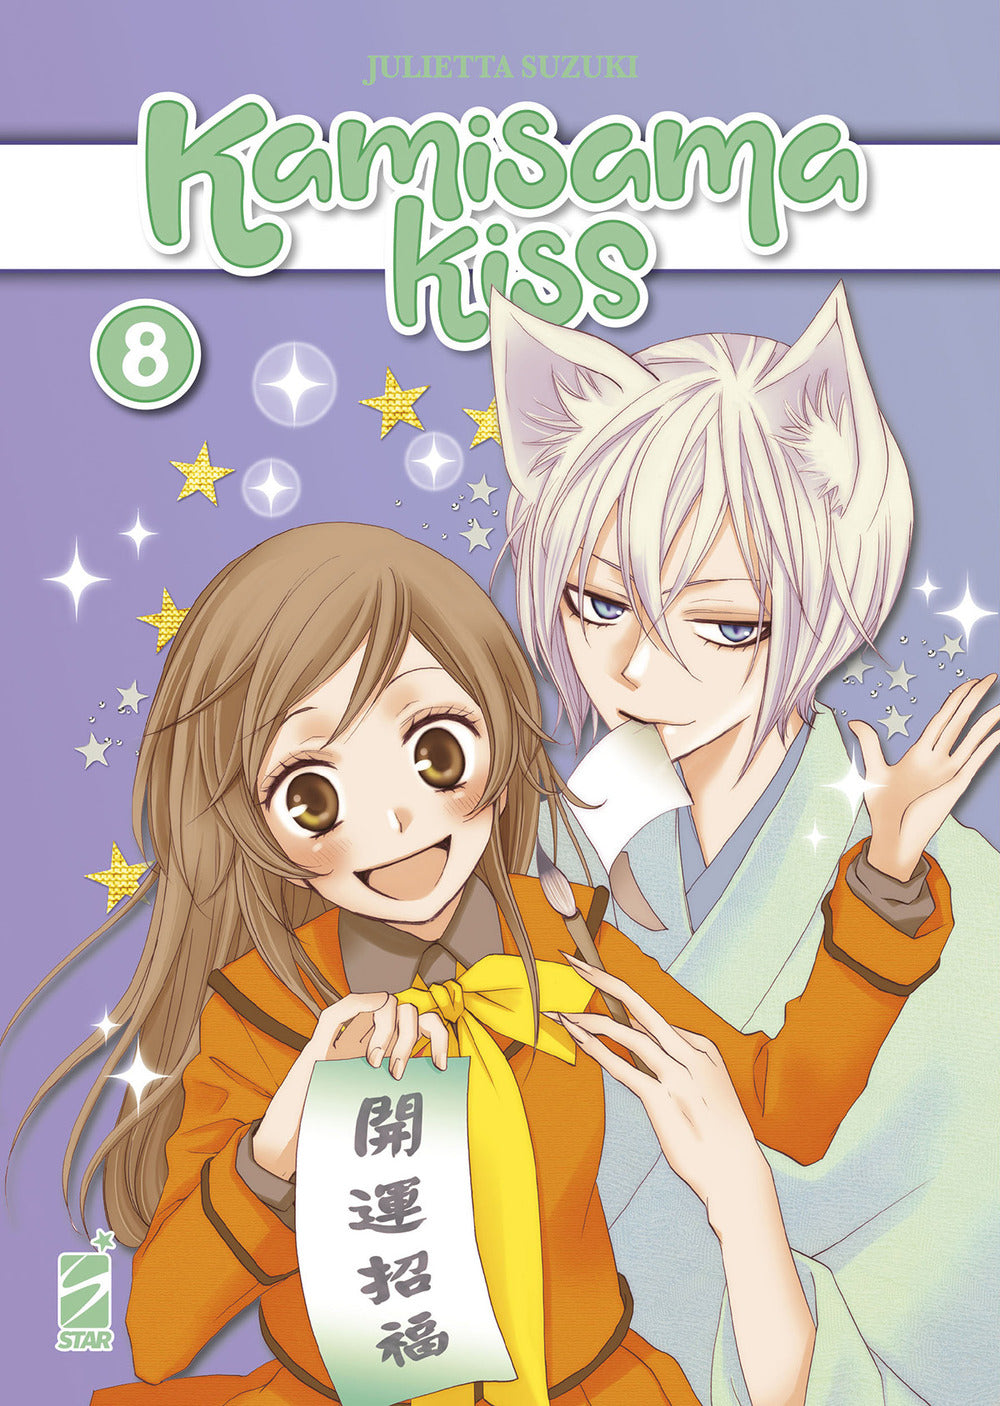 Kamisama kiss. New edition. Vol. 8